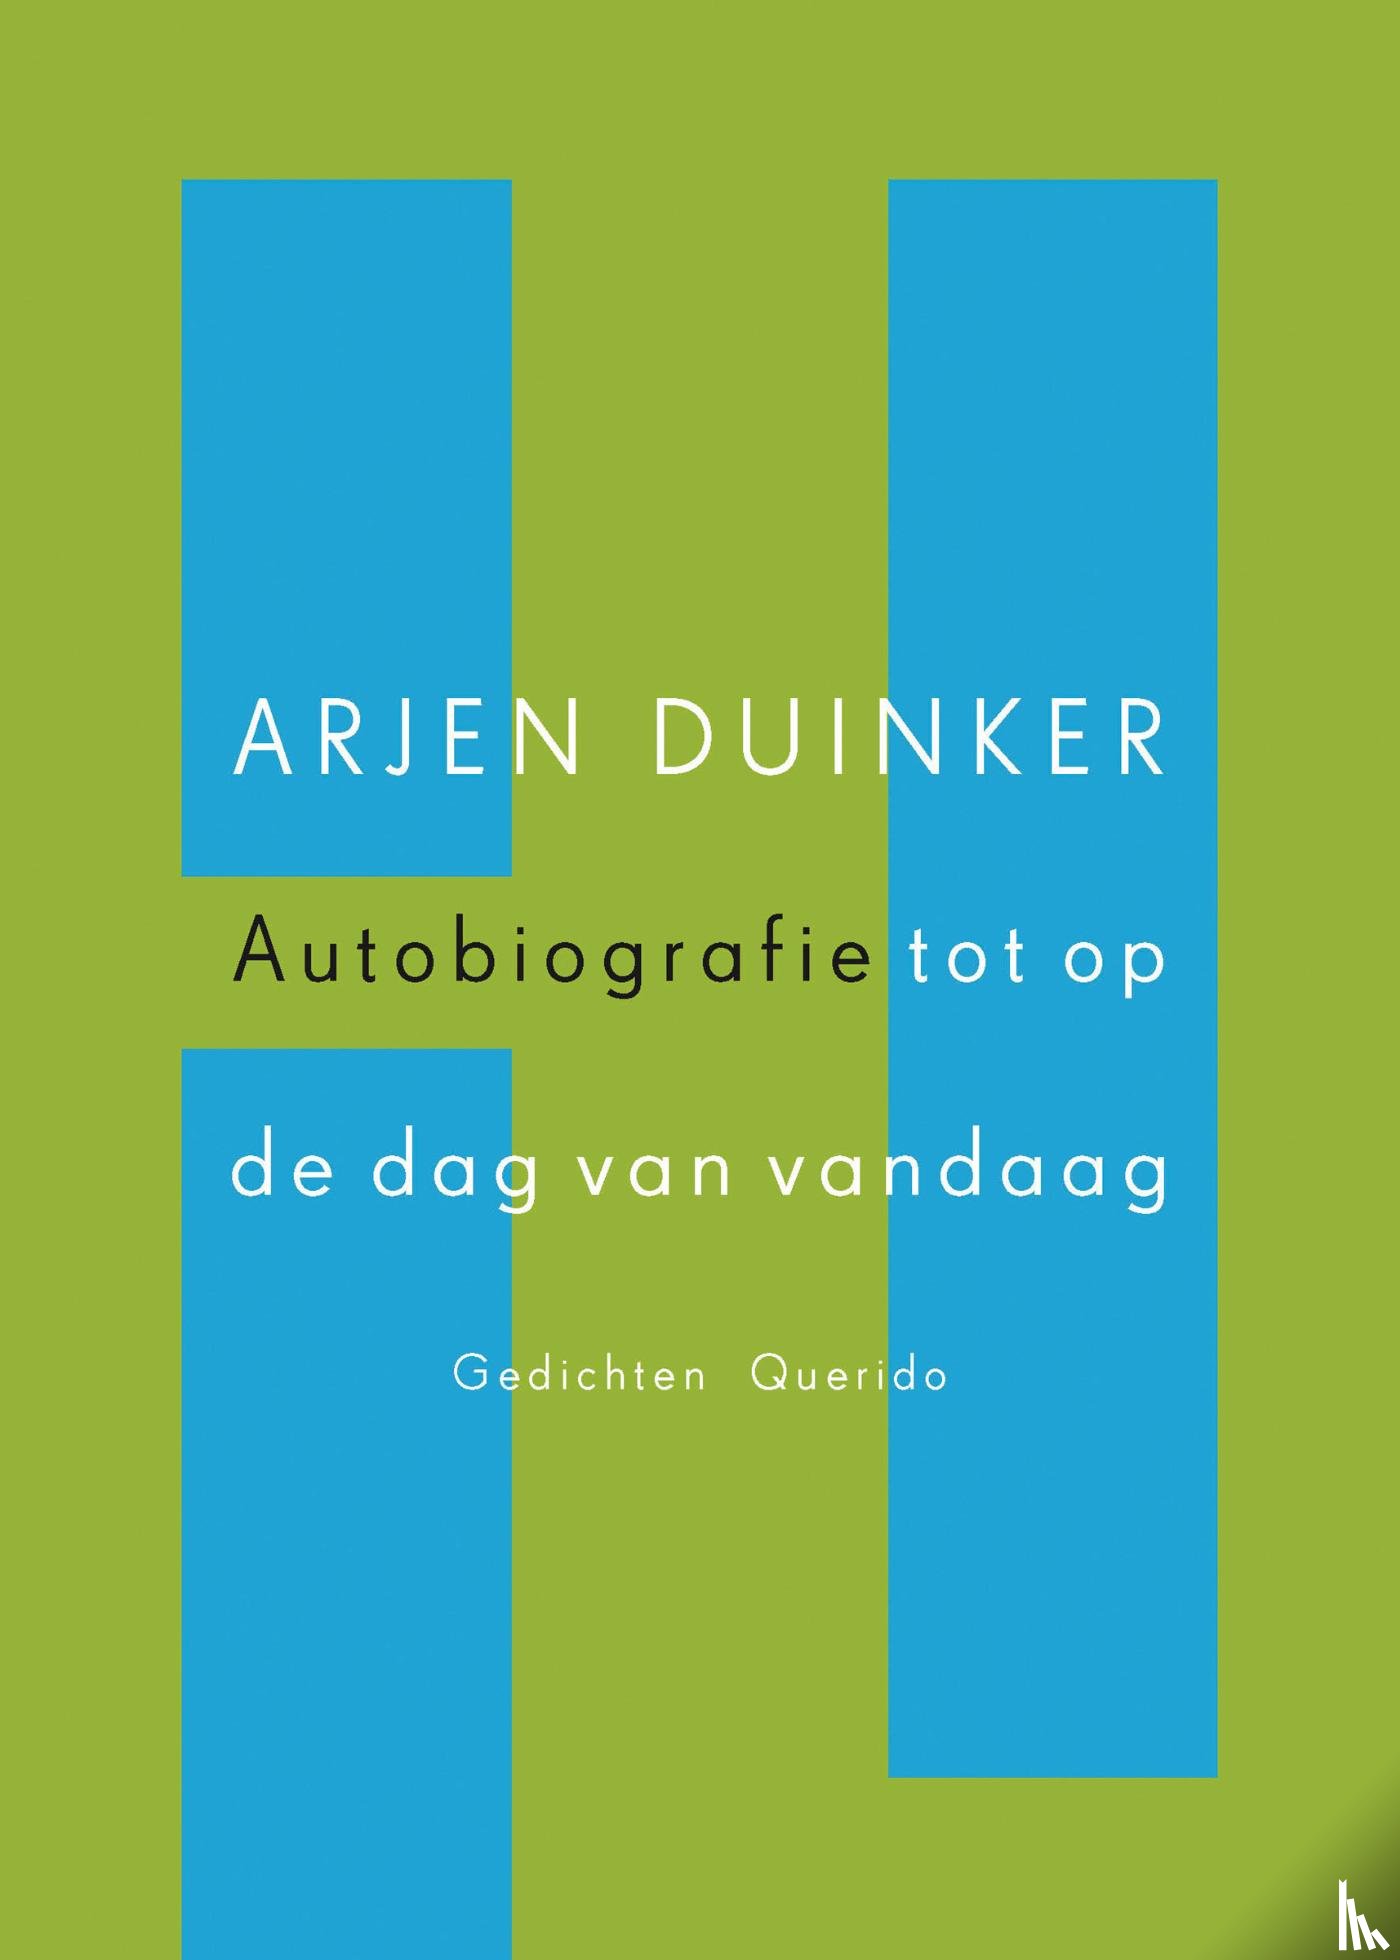 Duinker, Arjen - Autobiografie tot op de dag van vandaag